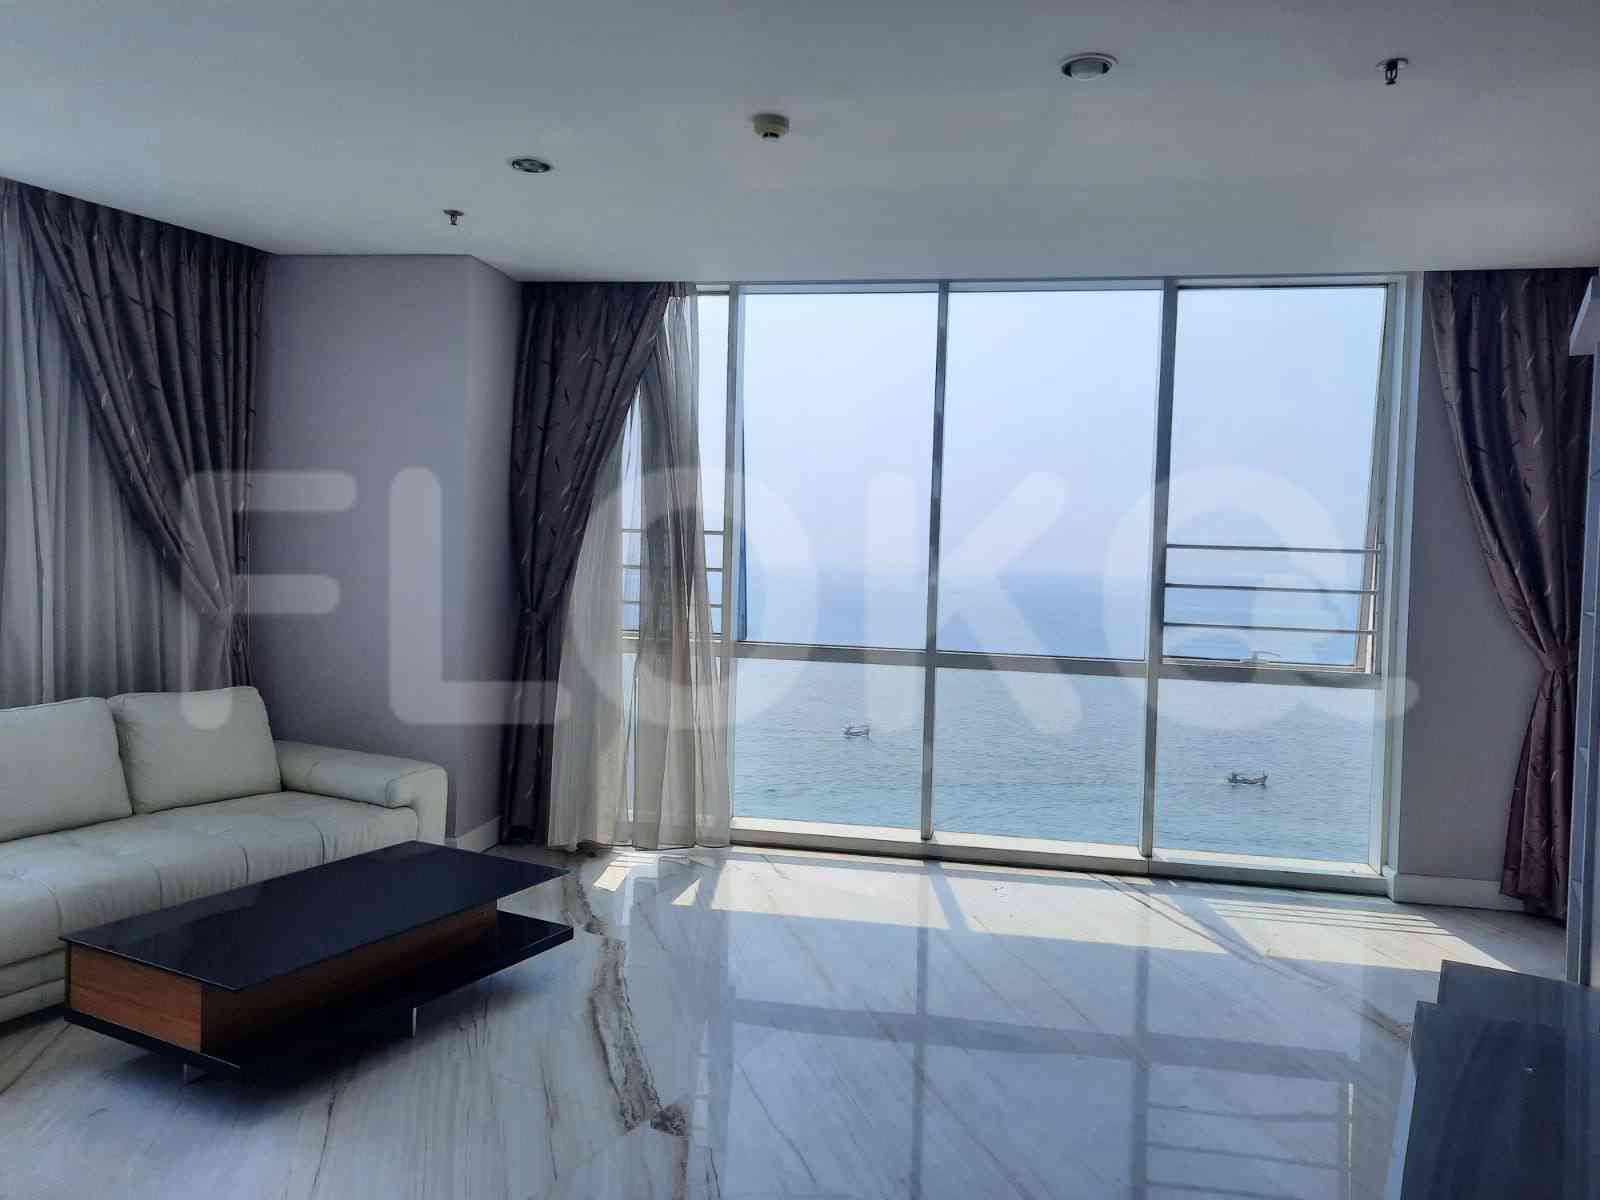 4 Bedroom on 15th Floor for Rent in Regatta - fpl609 1